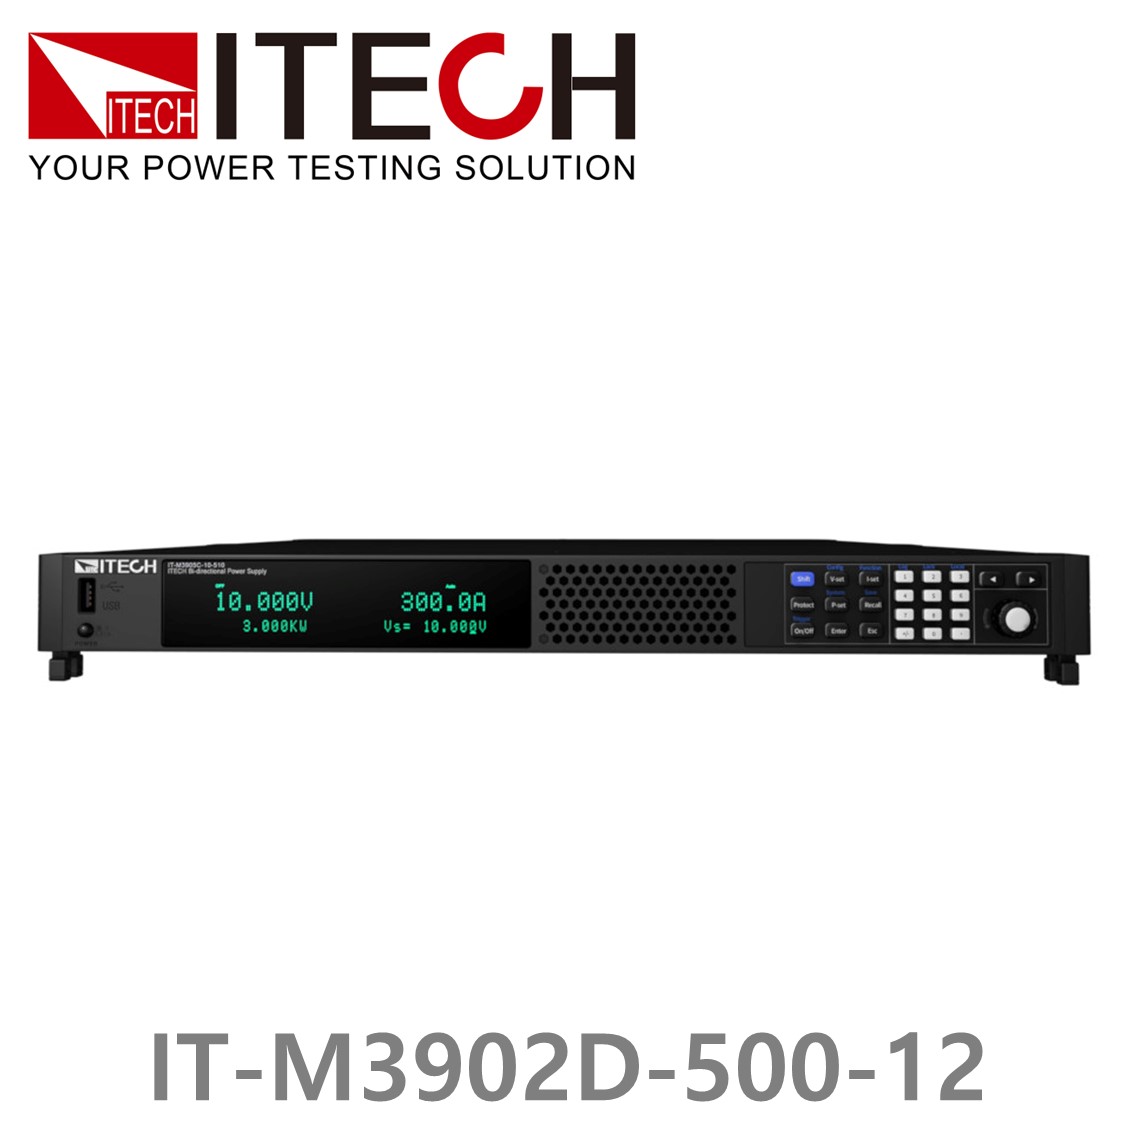 [ ITECH ] IT-M3902D-500-12 양방향 프로그래머블 DC전원공급기, DC파워서플라이